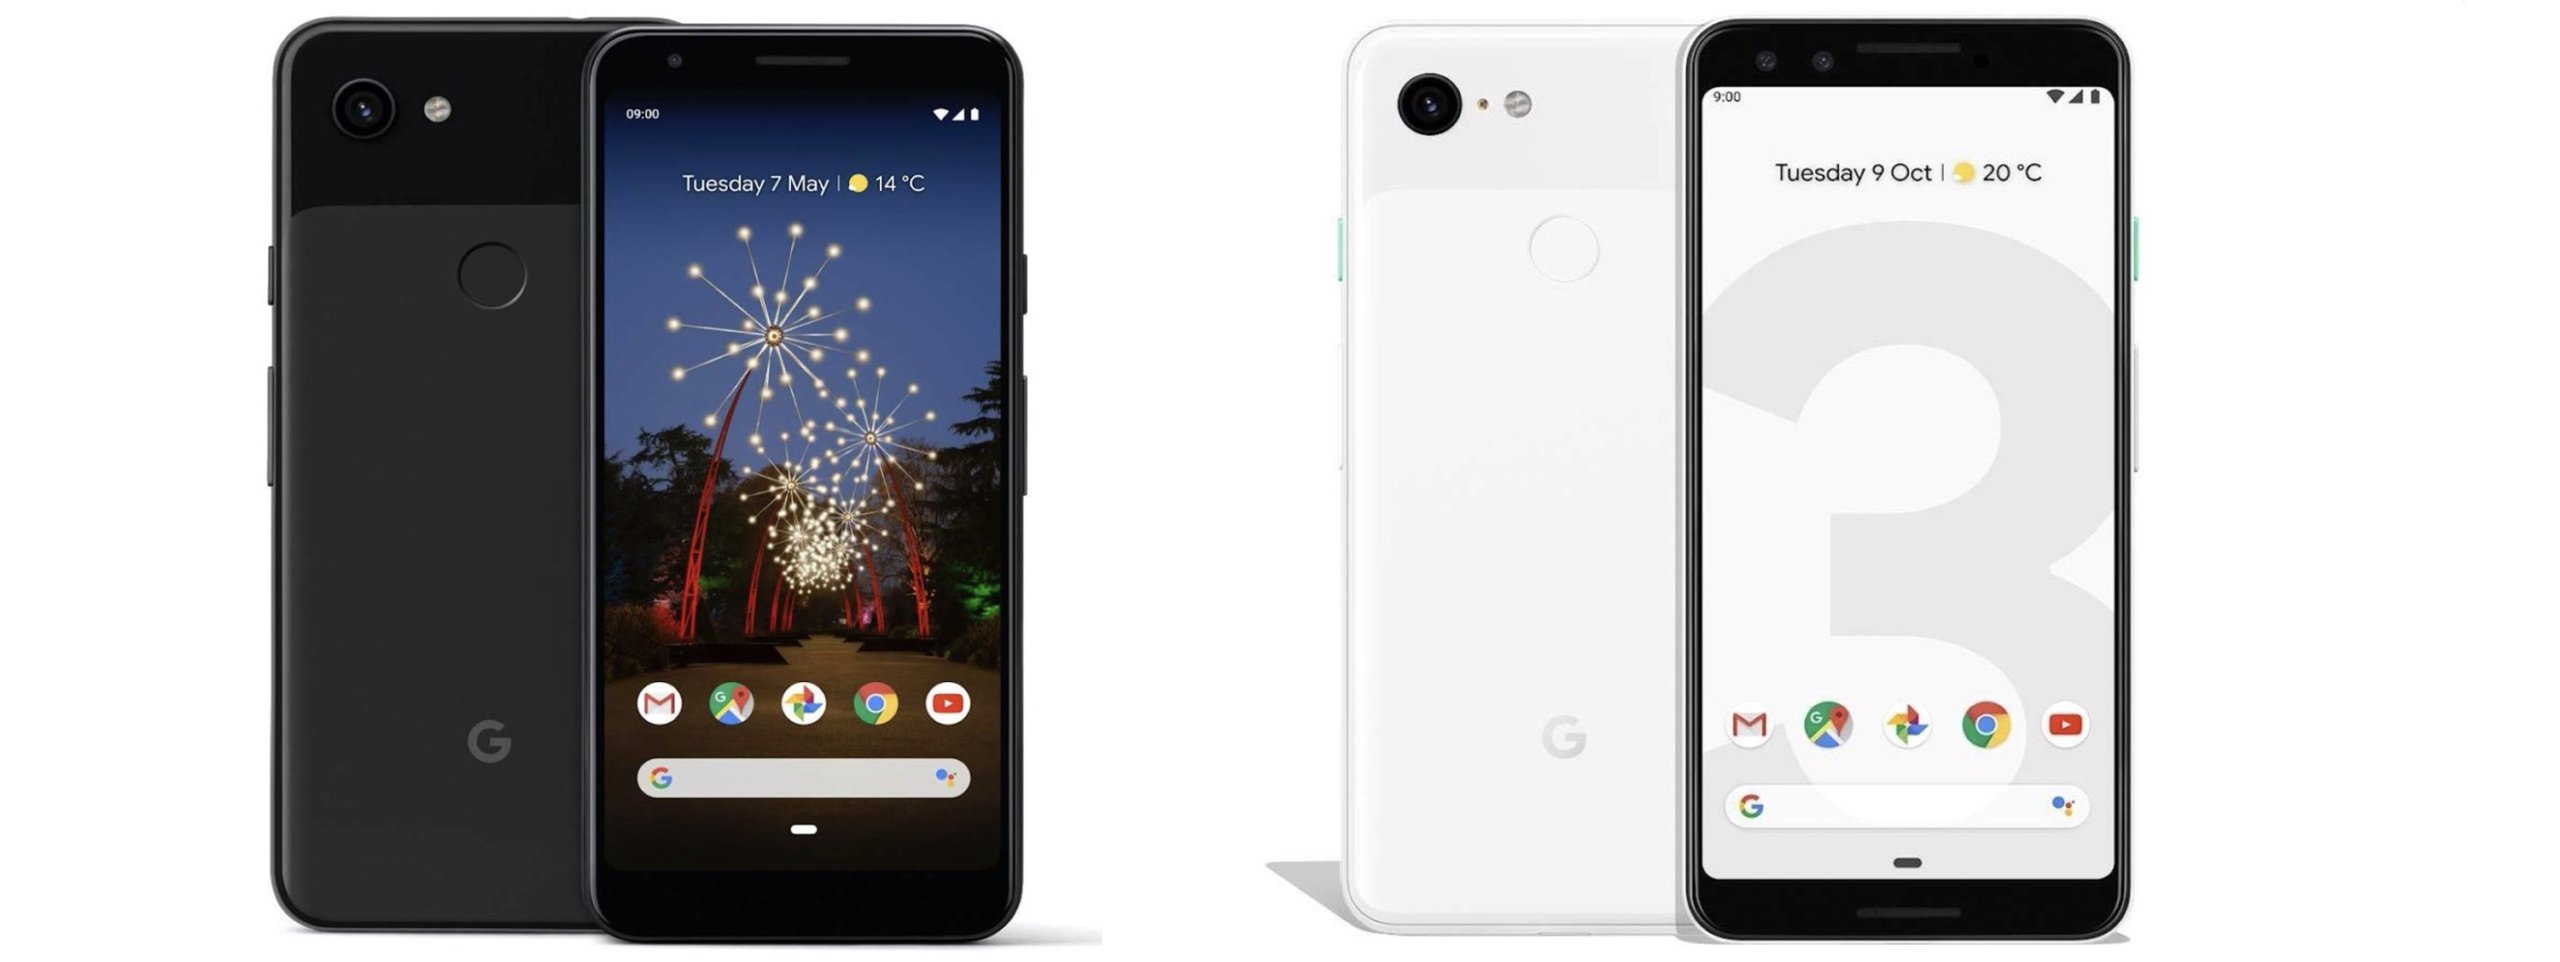 Google Pixel: 3 offerte sui modelli ricondizionati